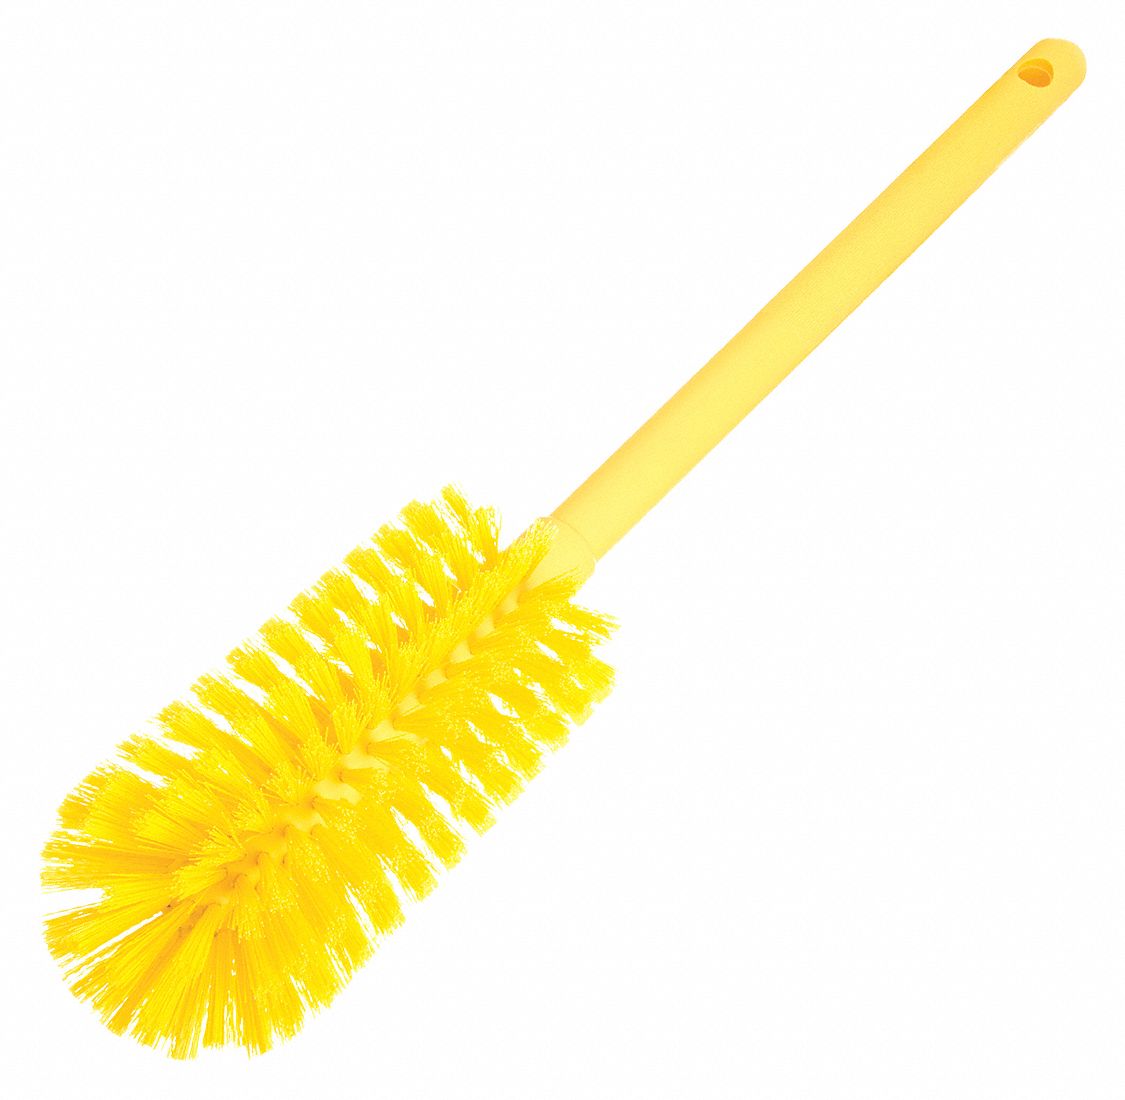 KLEEN HANDLER Yellow, Goblet Cleaning Bottle Brush, Durable